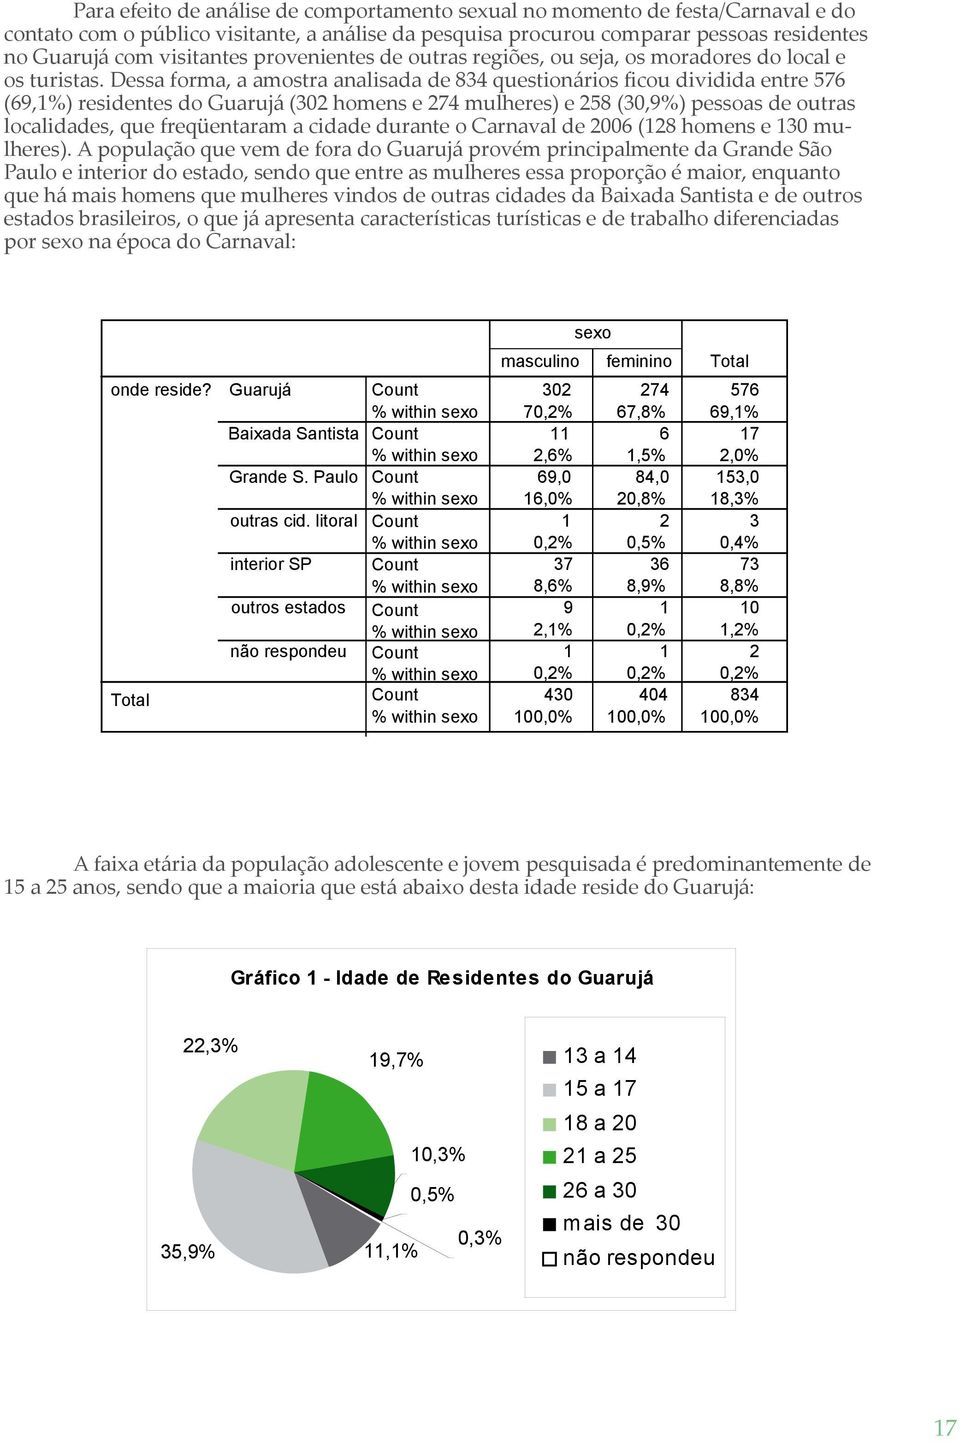 Dessa forma, a amostra analisada de 834 questionários ficou dividida entre 576 (69,1%) residentes do Guarujá (302 homens e 274 mulheres) e 258 (30,9%) pessoas de outras localidades, que freqüentaram